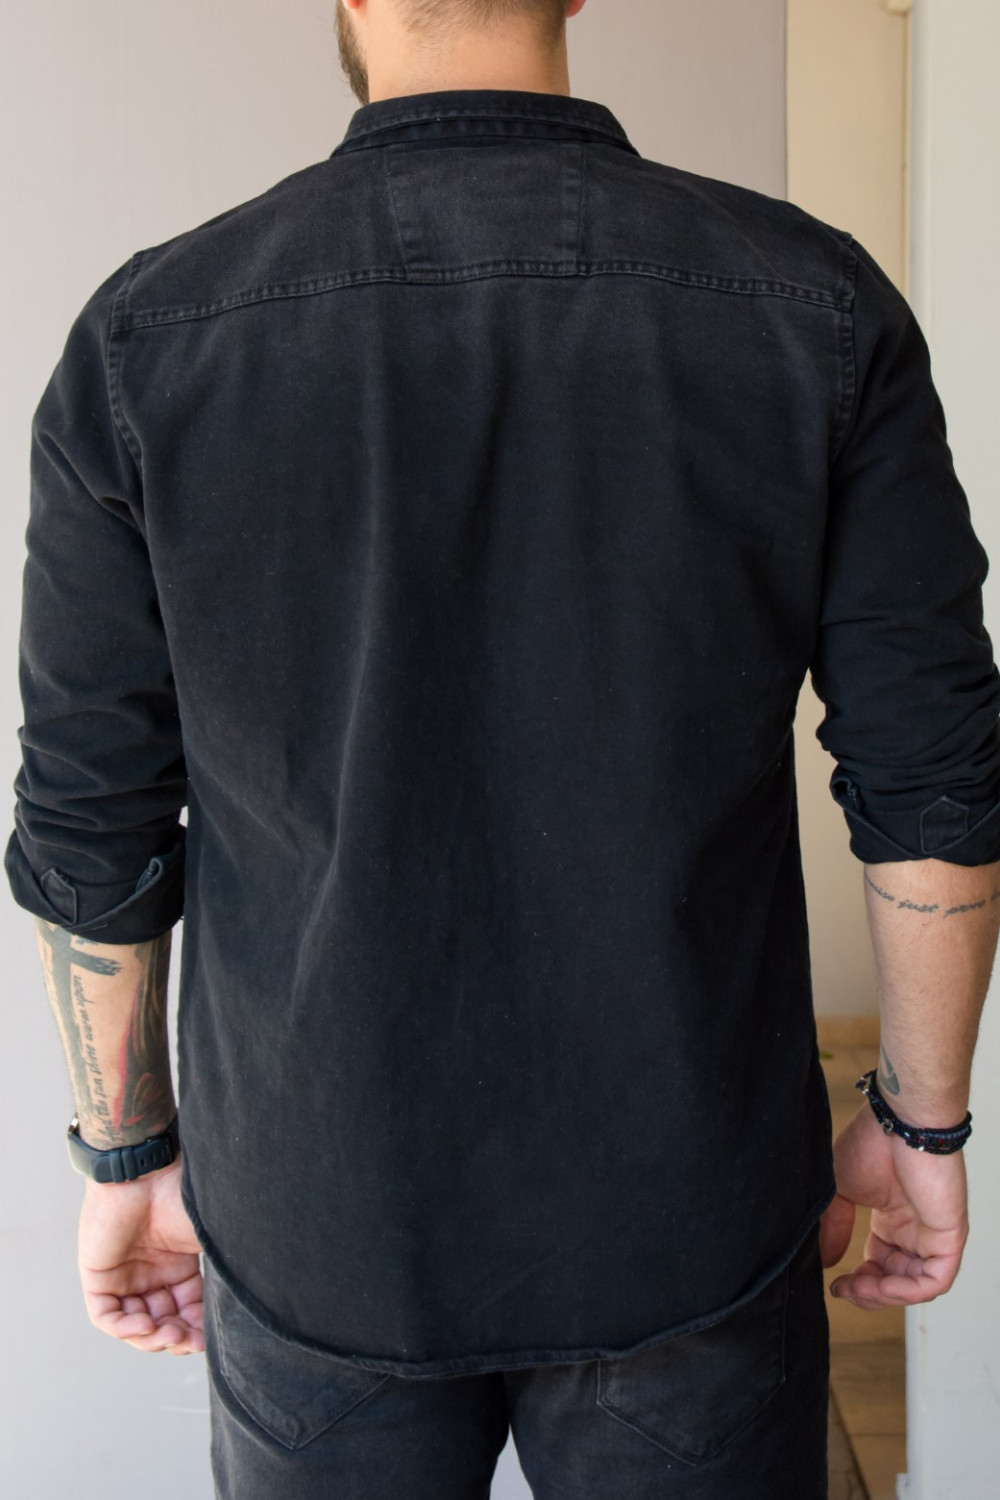 Ανδρικό μαύρο τζιν πουκάμισο με κουμπιά 182833